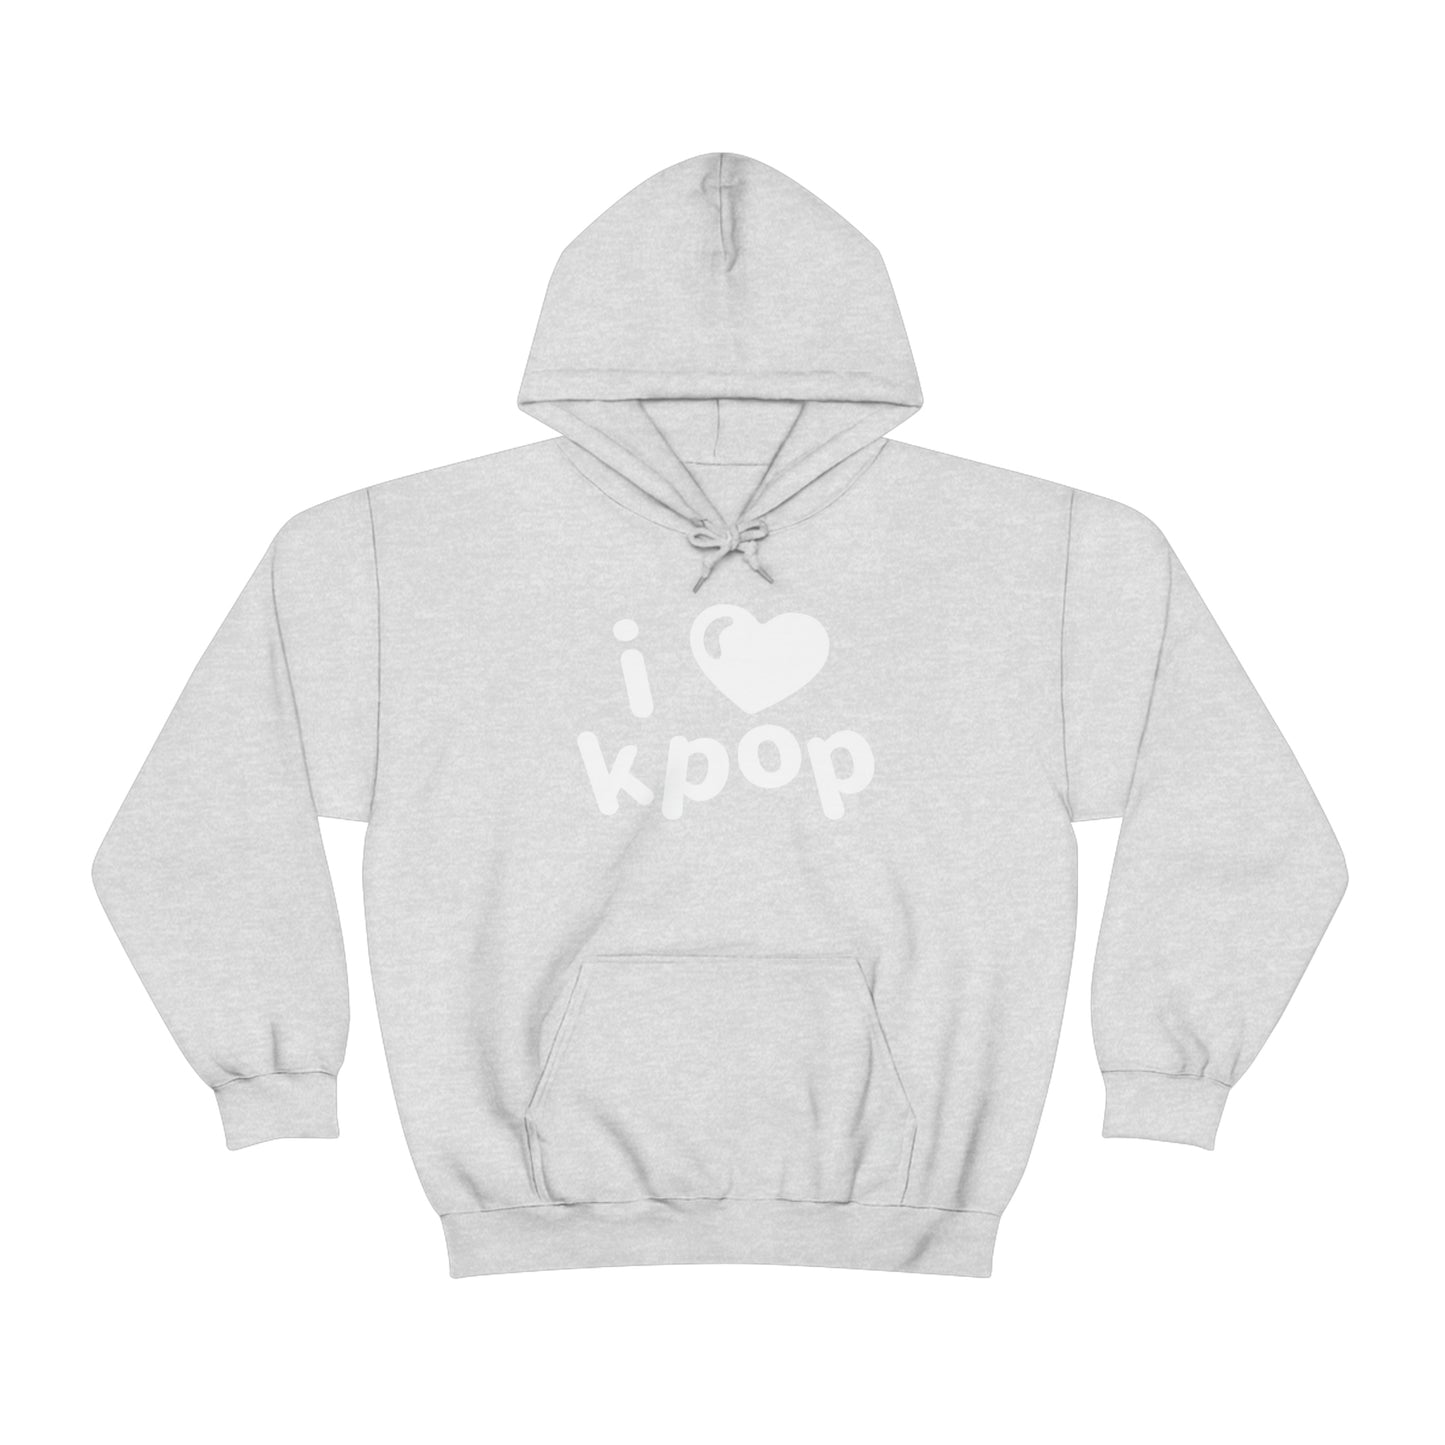 I love kpop hoodie kdrama K-pop cute kawaii hoodies